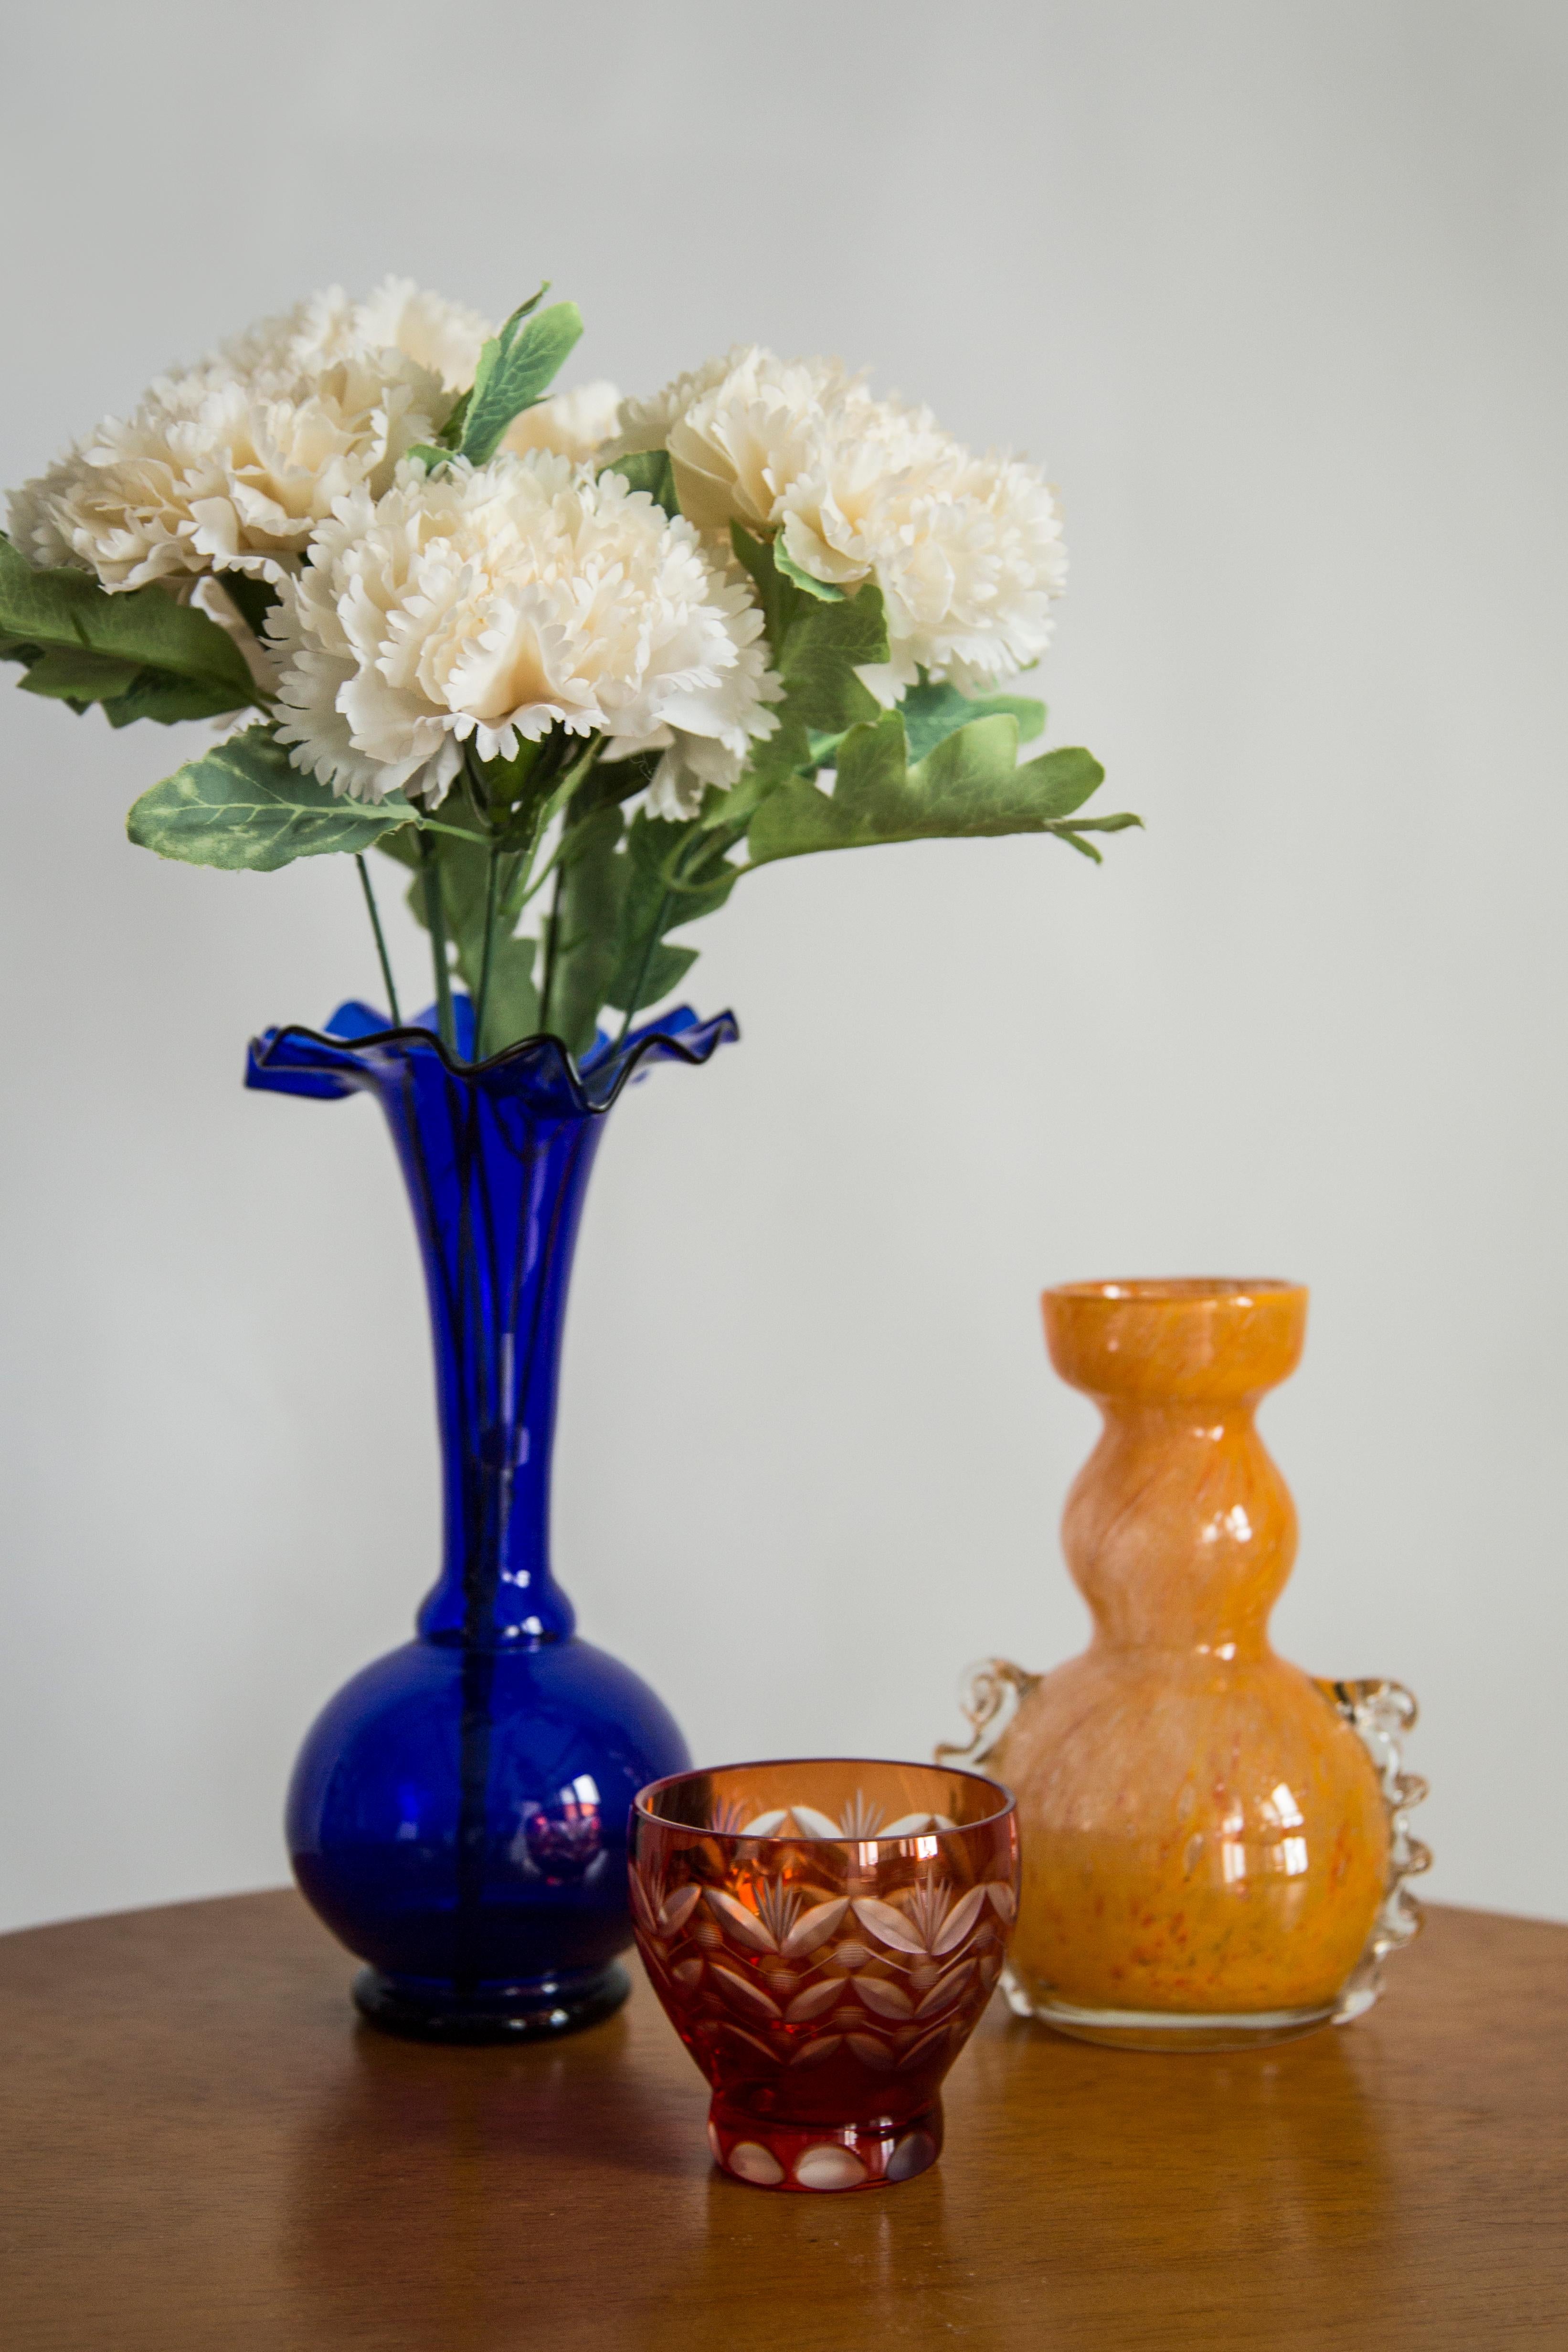 Vase bleu de forme organique étonnante. Produit dans les années 1960.
Verre en bon état. Tous les défauts sont indiqués sur les photos.
La surface extérieure en relief, l'intérieur lisse. Vase en verre épais.

La surface irrégulière de l'objet